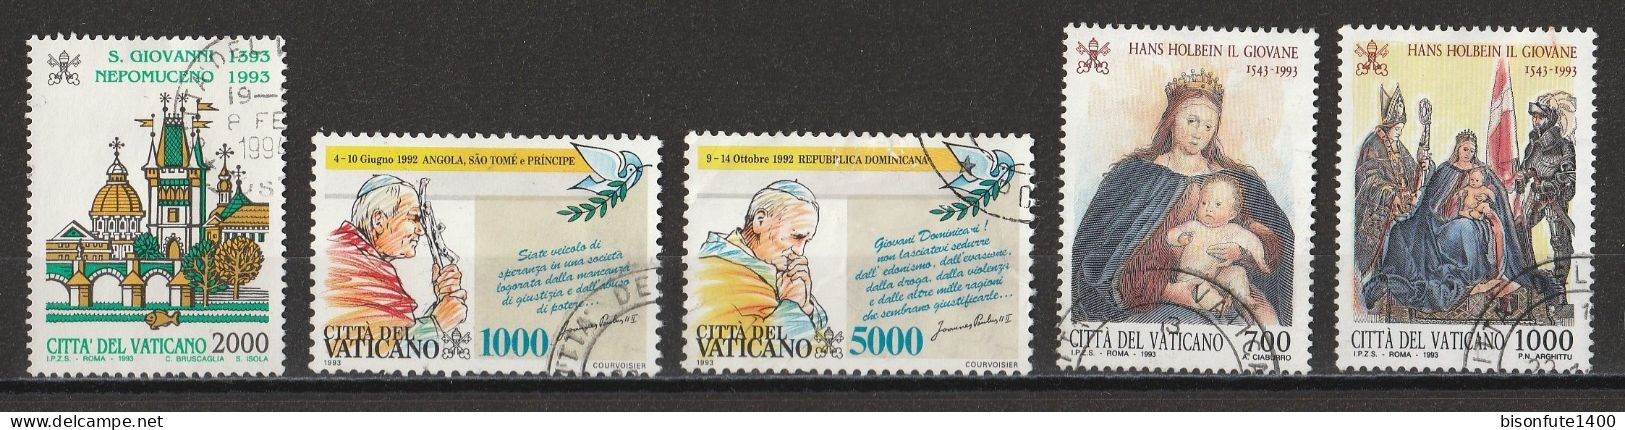 Vatican 1993 : Timbres Yvert & Tellier N° 962 - 964 - 965 - 966 - 967 Et 968 Oblitérés. - Gebruikt